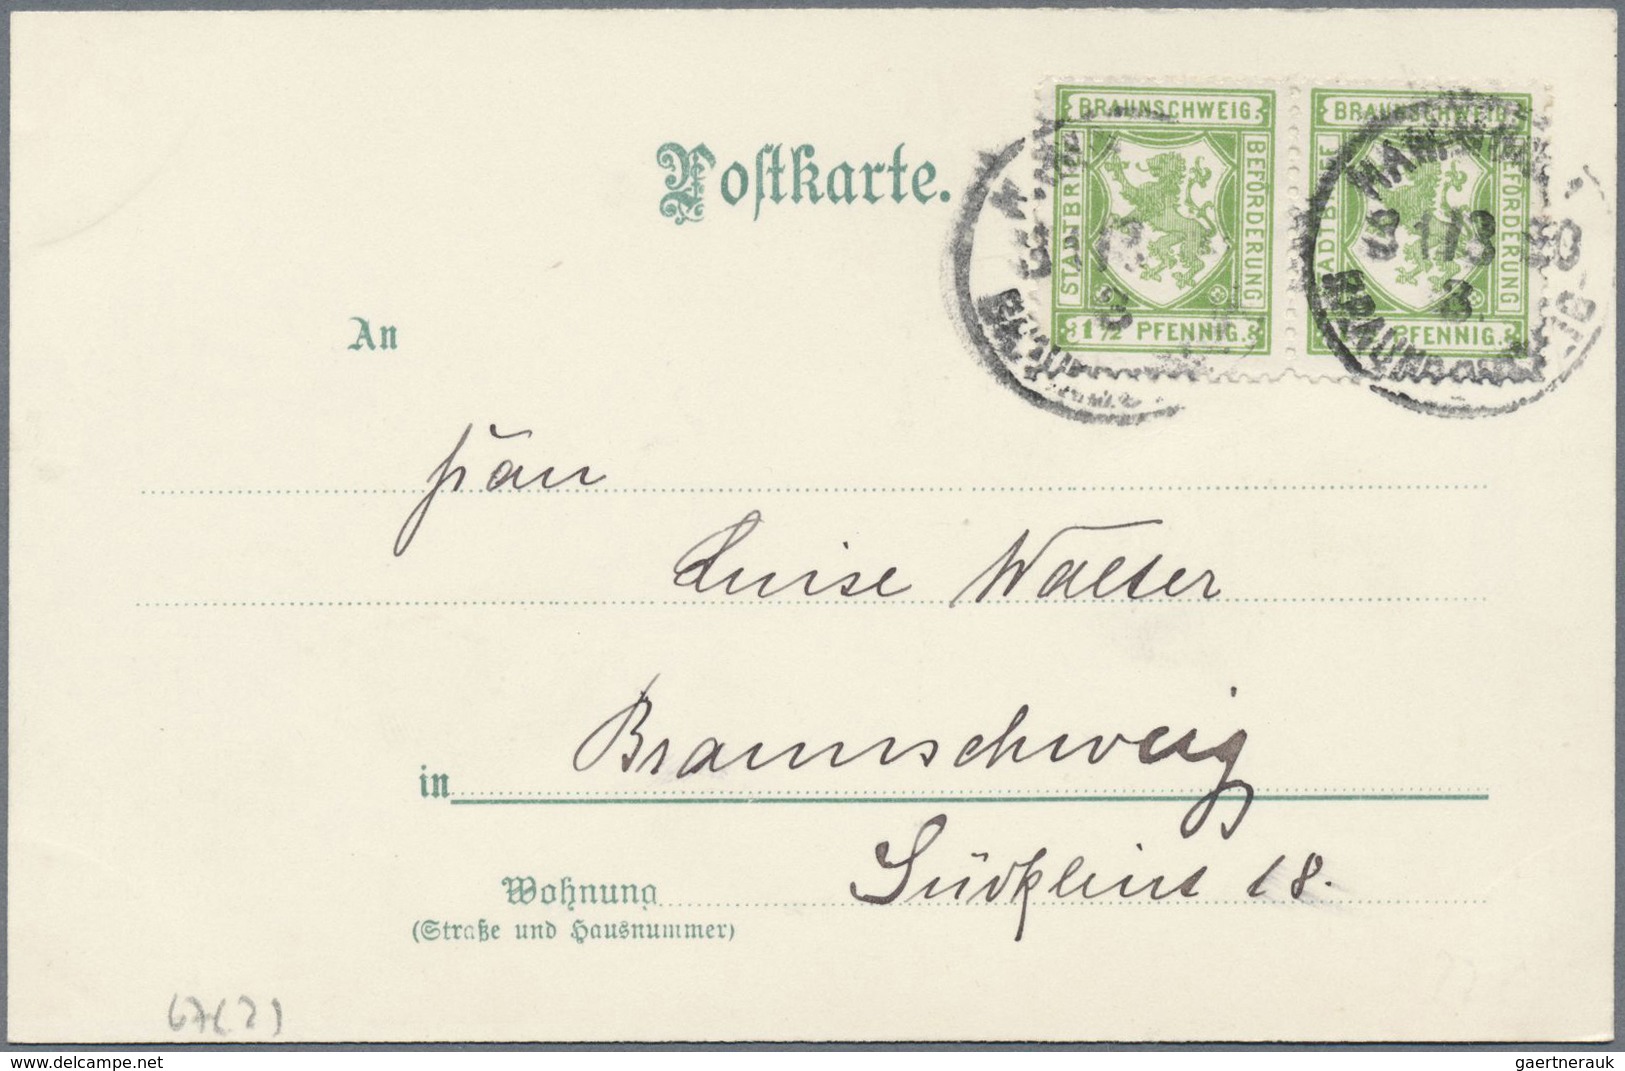 Deutsches Reich - Privatpost (Stadtpost): BRAUNSCHWEIG: 1898/1900, 4 gelaufene Ansichtskarten, davon